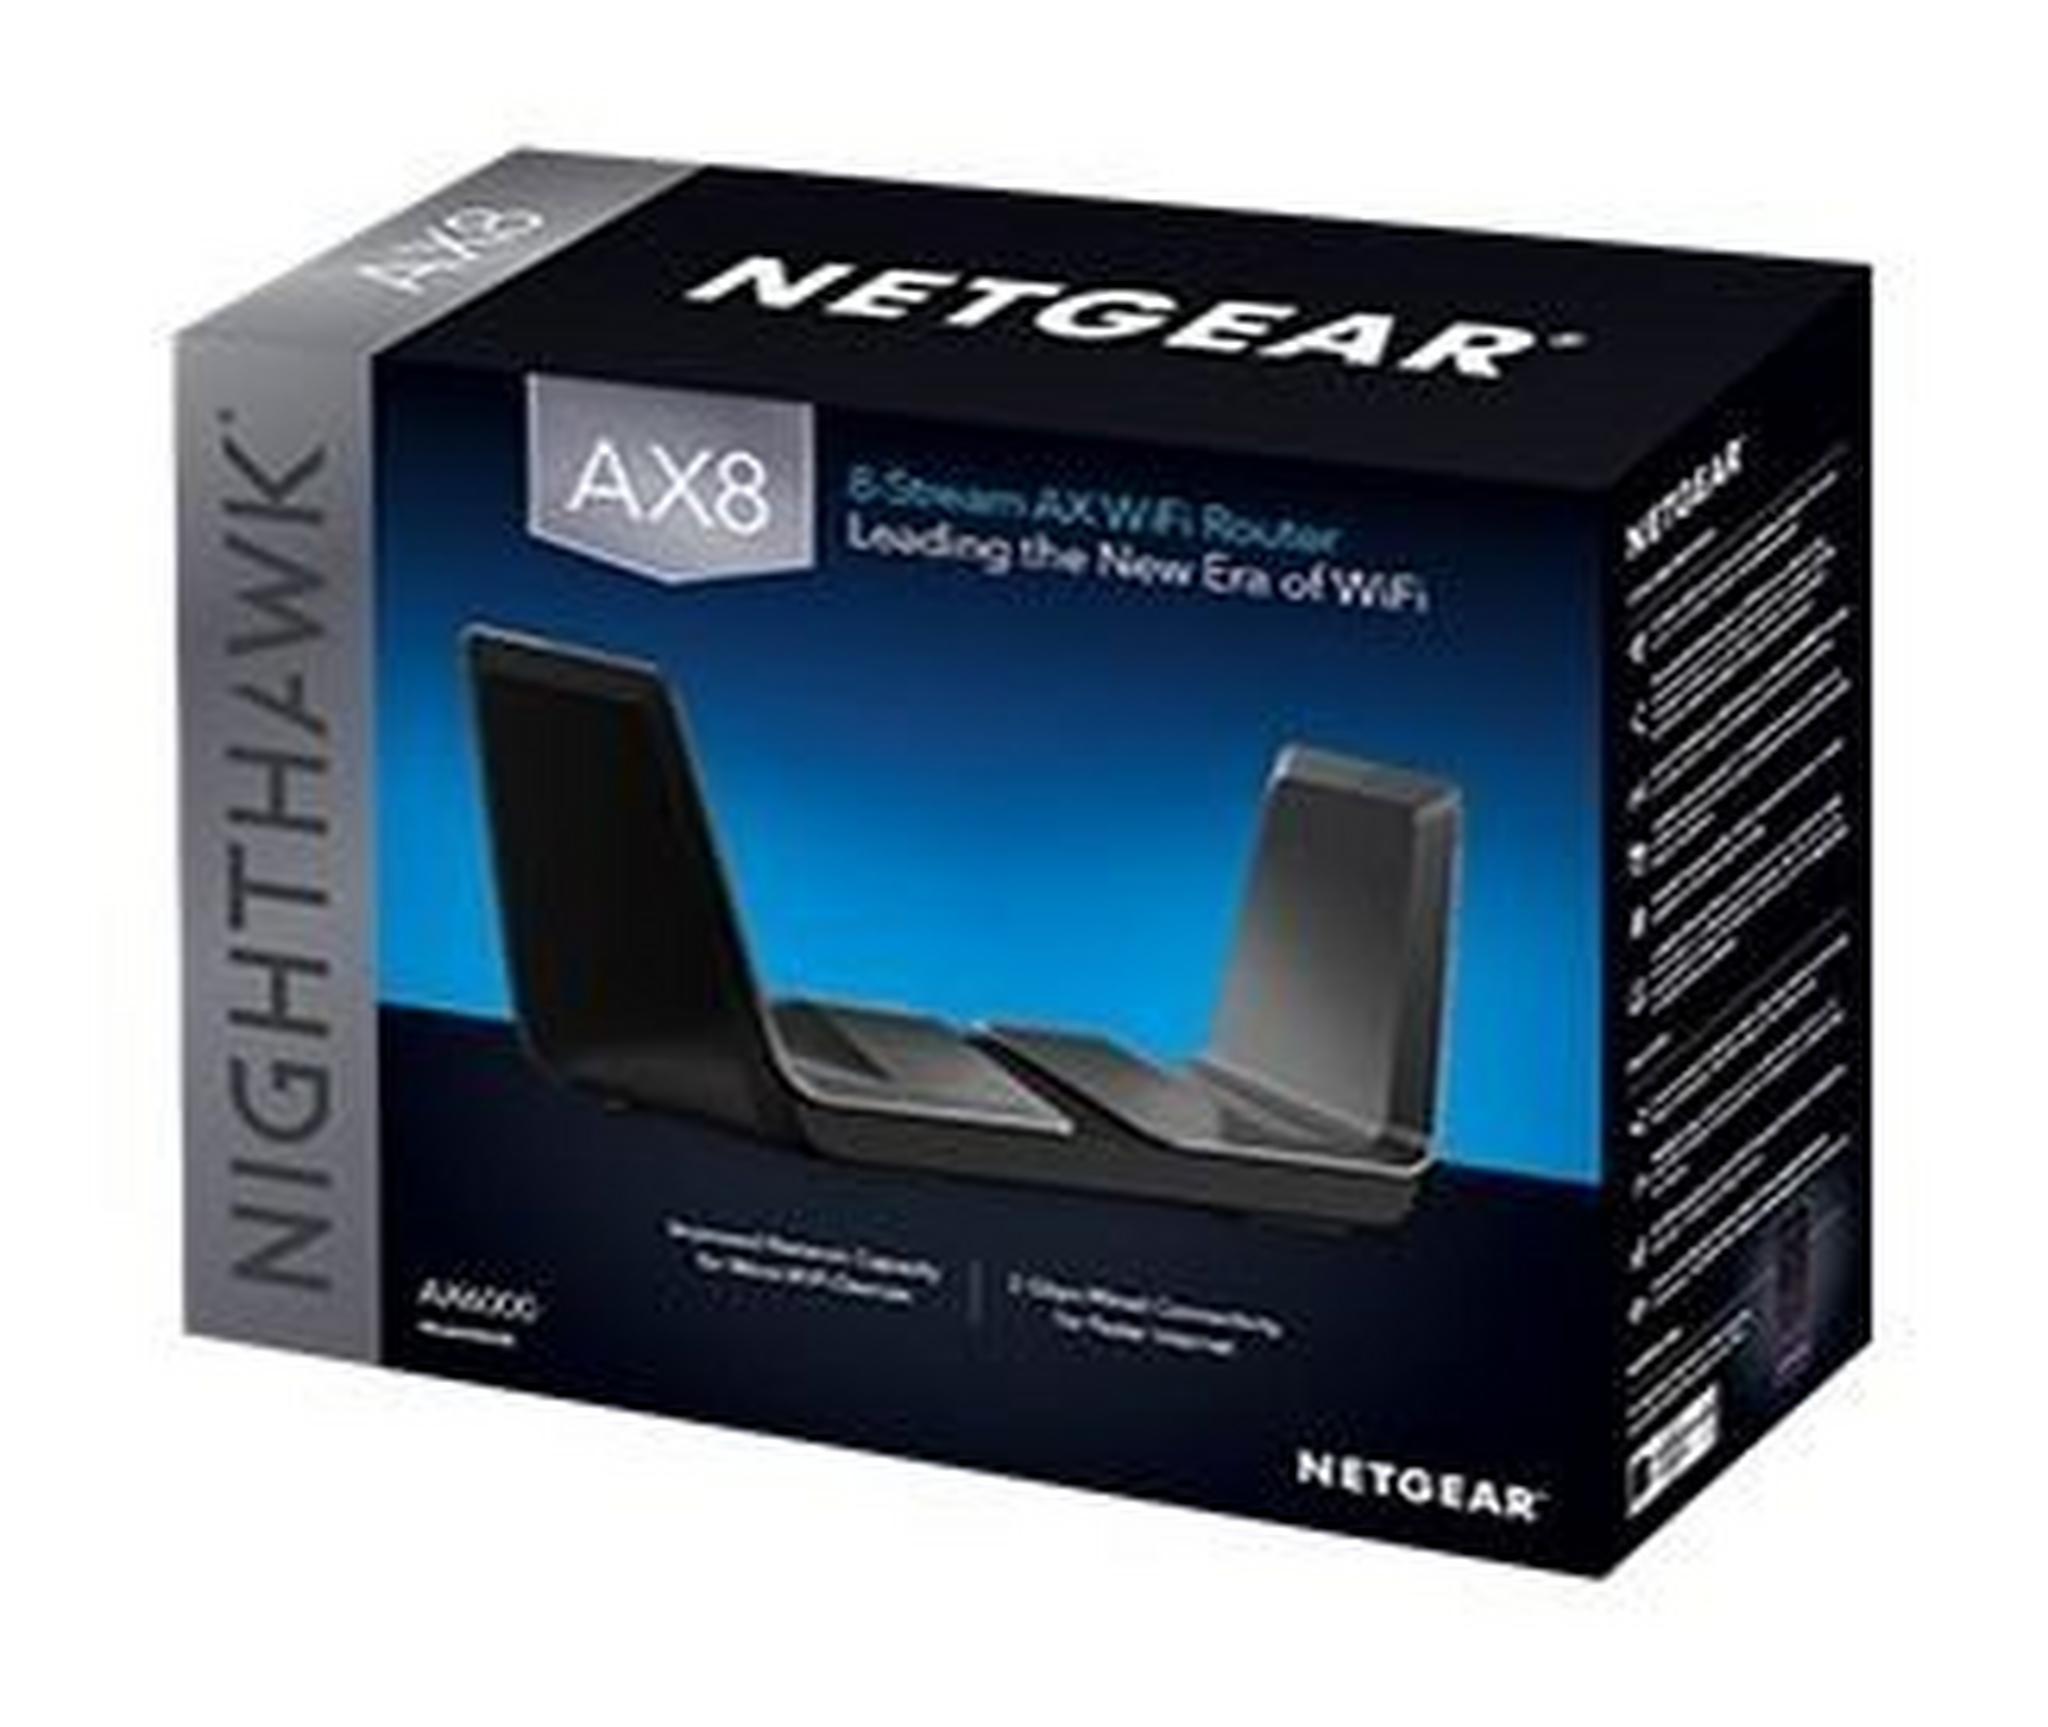 Nighthawk AX8 8-Stream Wi-Fi-6 Router (RAX80)